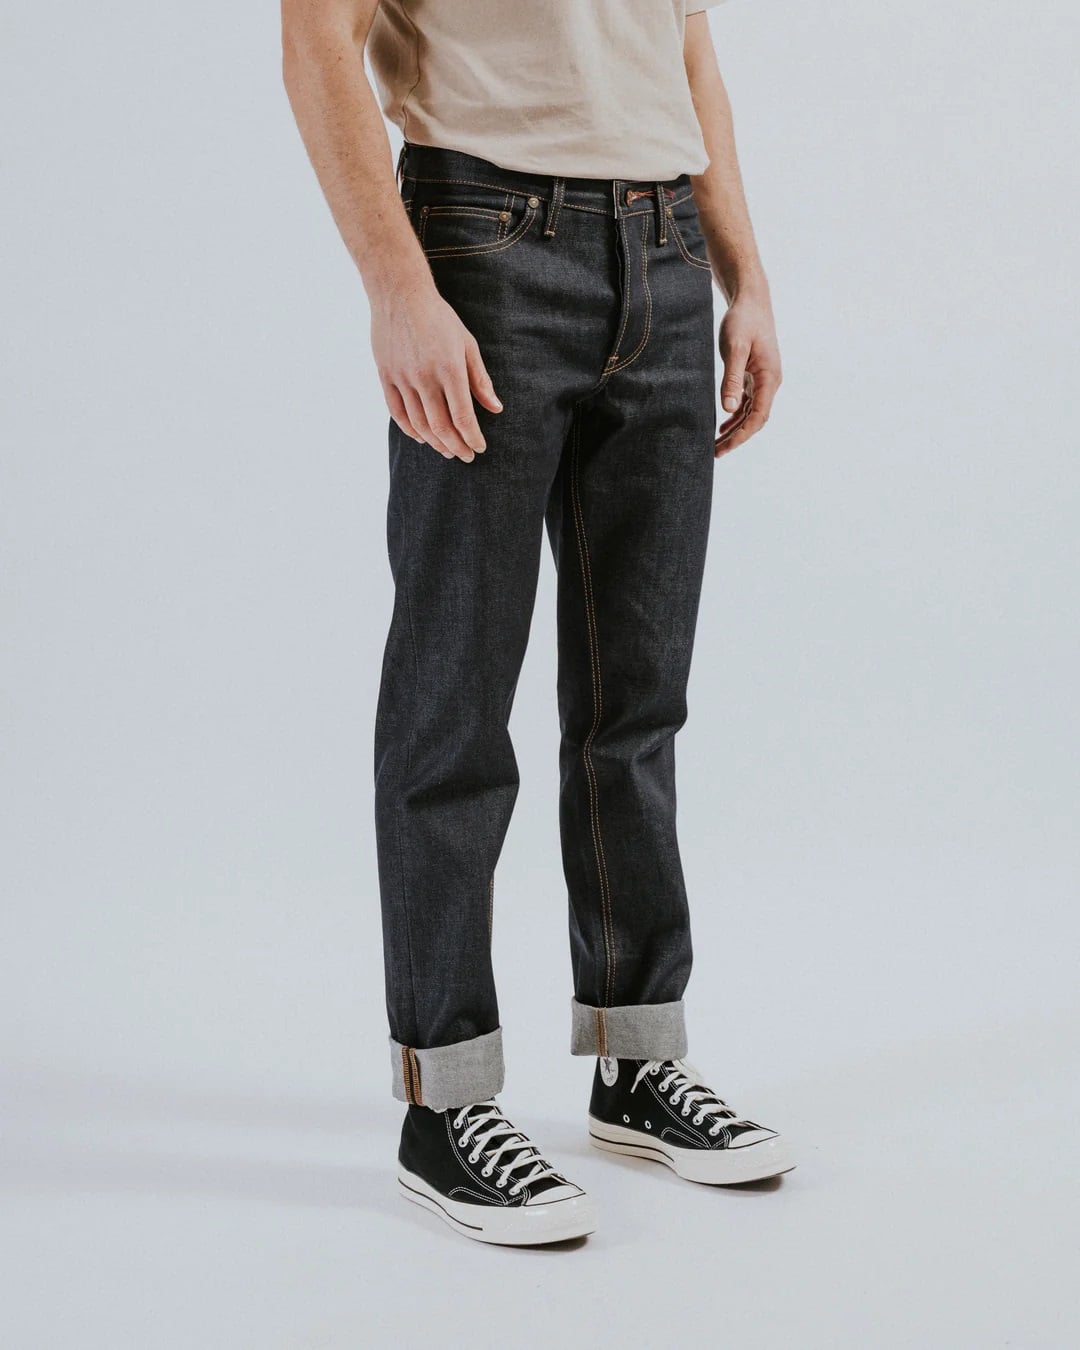 Meilleures marques de jeans Hiut Denim